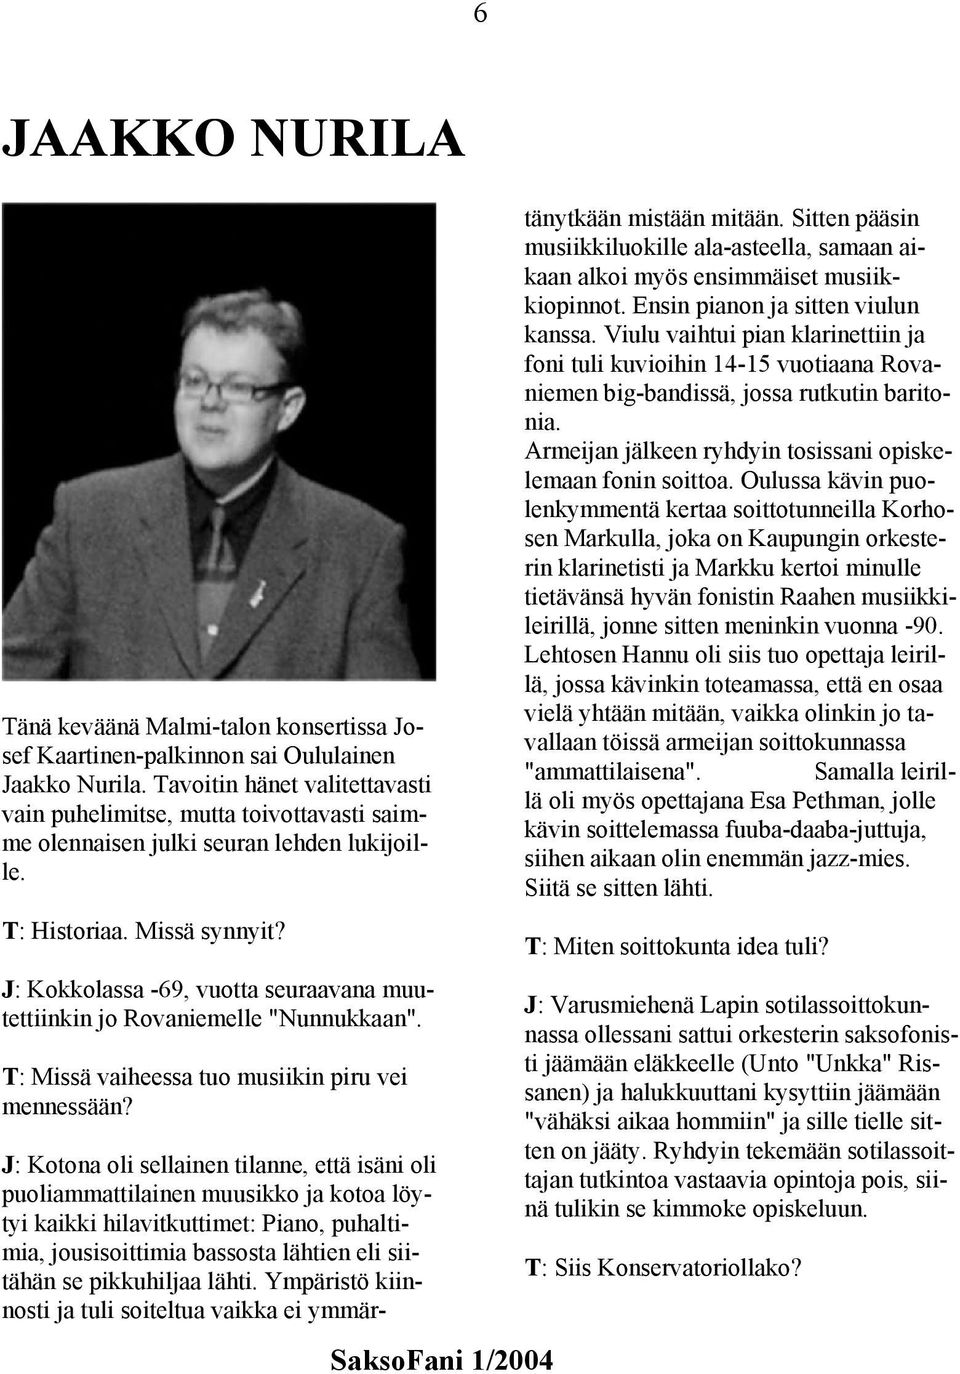 J: Kokkolassa -69, vuotta seuraavana muutettiinkin jo Rovaniemelle "Nunnukkaan". T: Missä vaiheessa tuo musiikin piru vei mennessään?